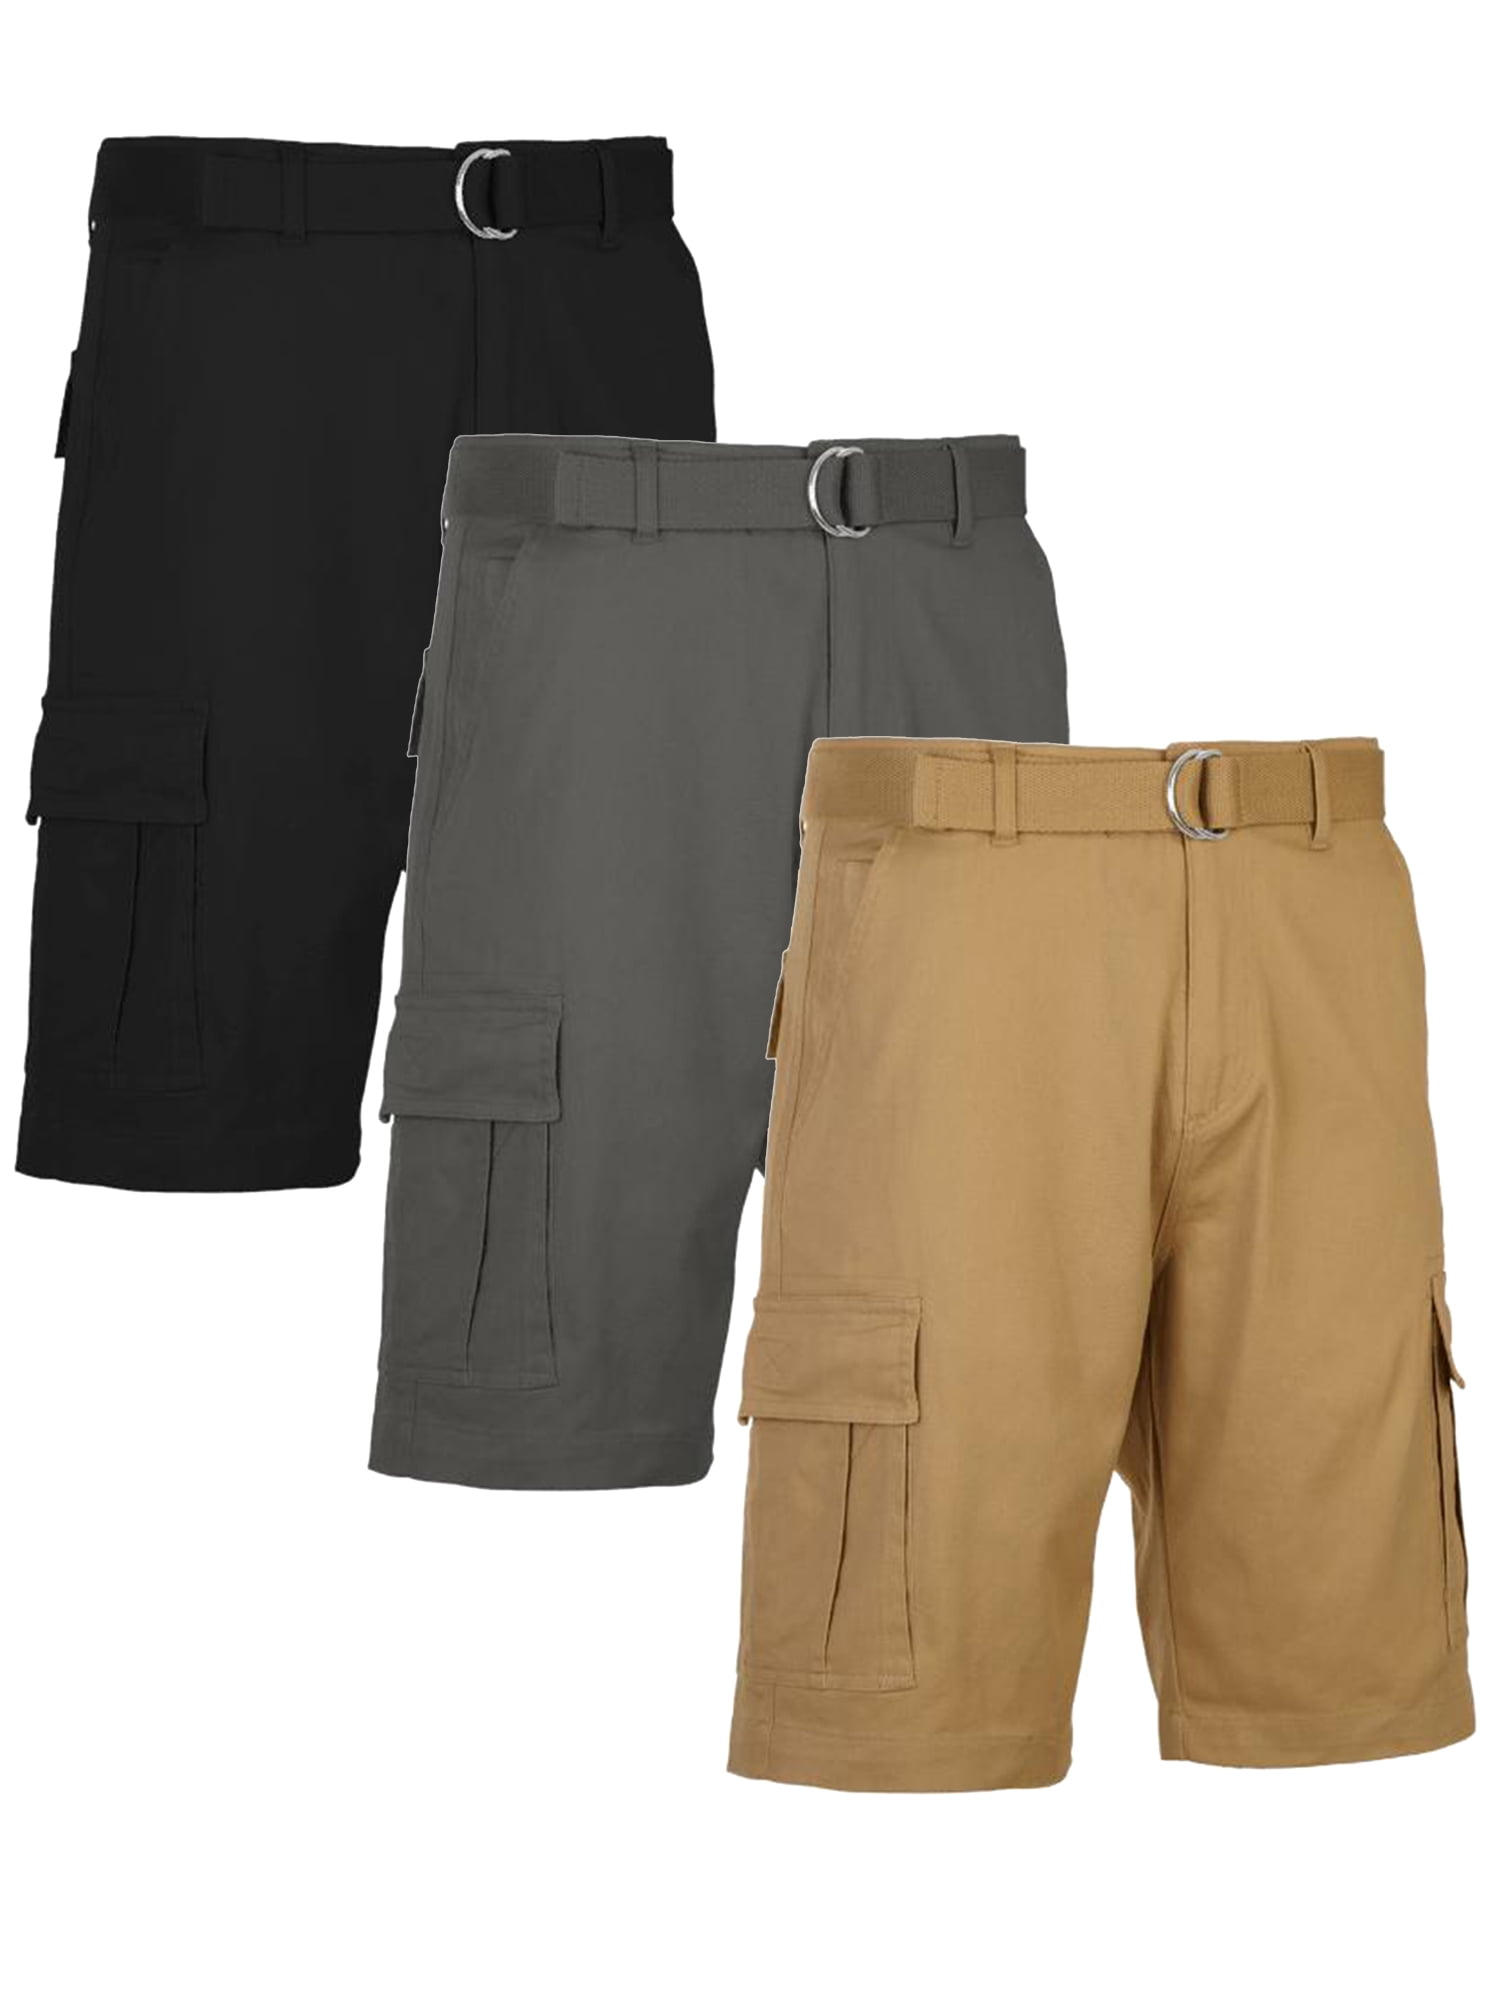 native Beg Tegenover Men's Belted Cotton Cargo Shorts (3-Pack) - Walmart.com